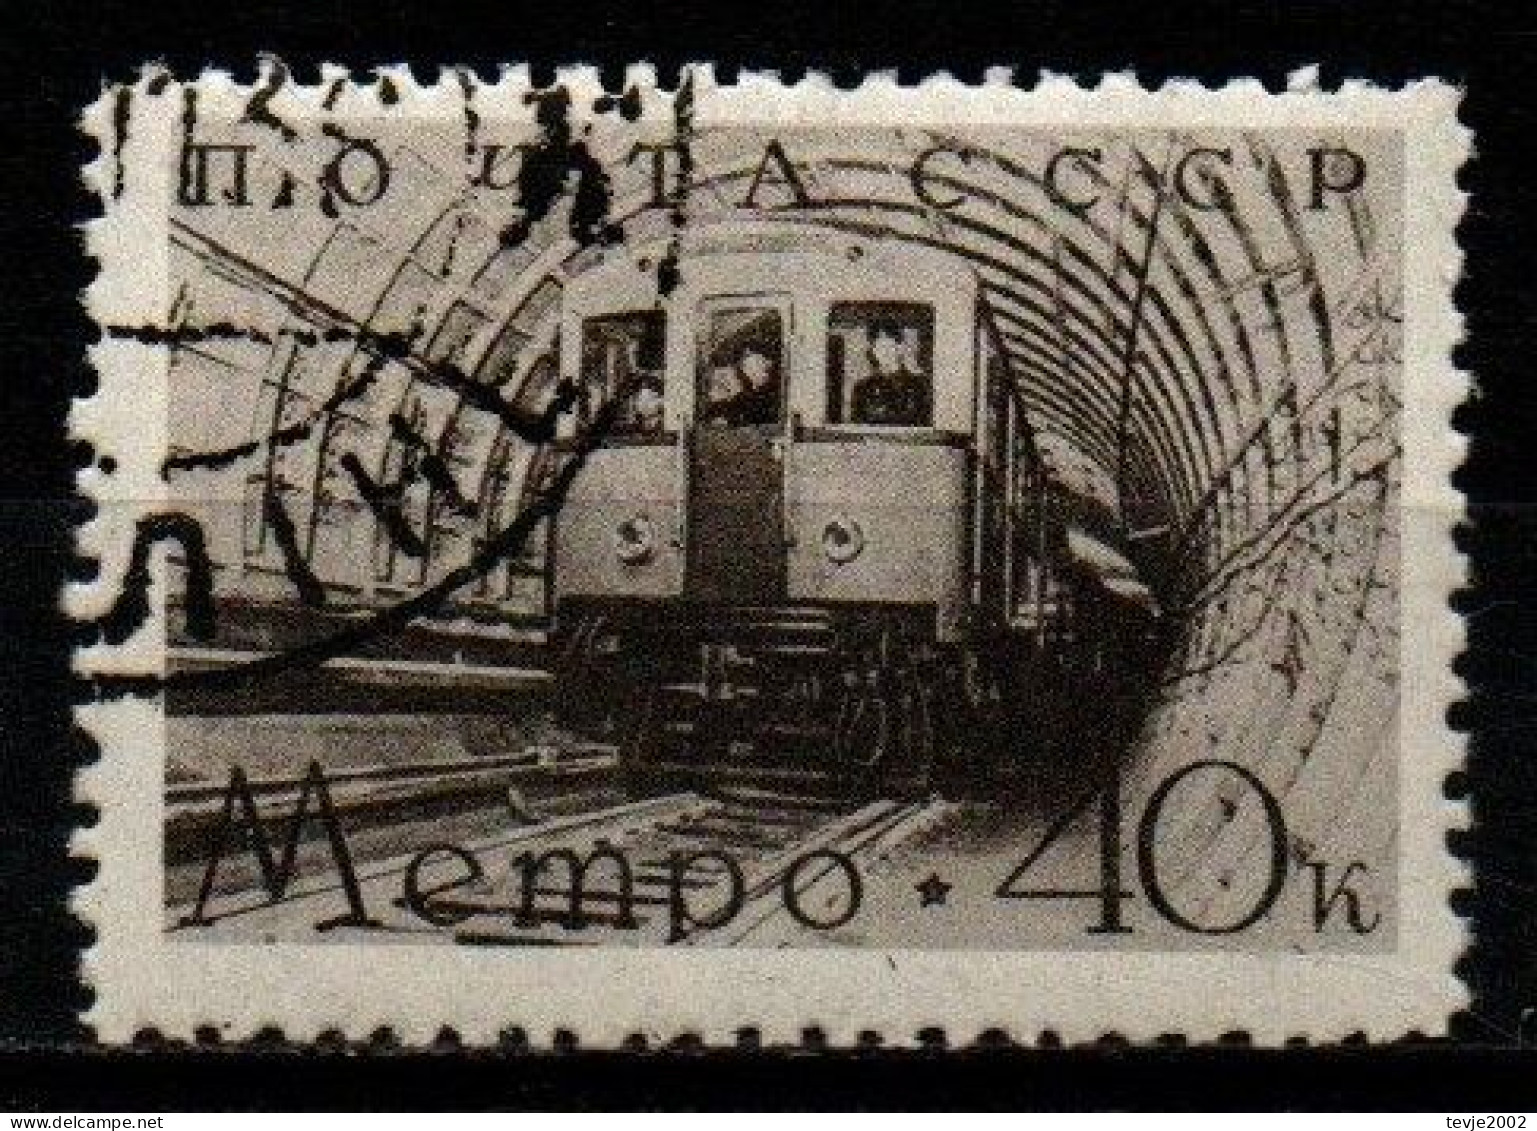 Sowjetunion UdSSR 1938 - Mi.Nr. 650 - Gestempelt Used - Eisenbahnen Railways - Used Stamps